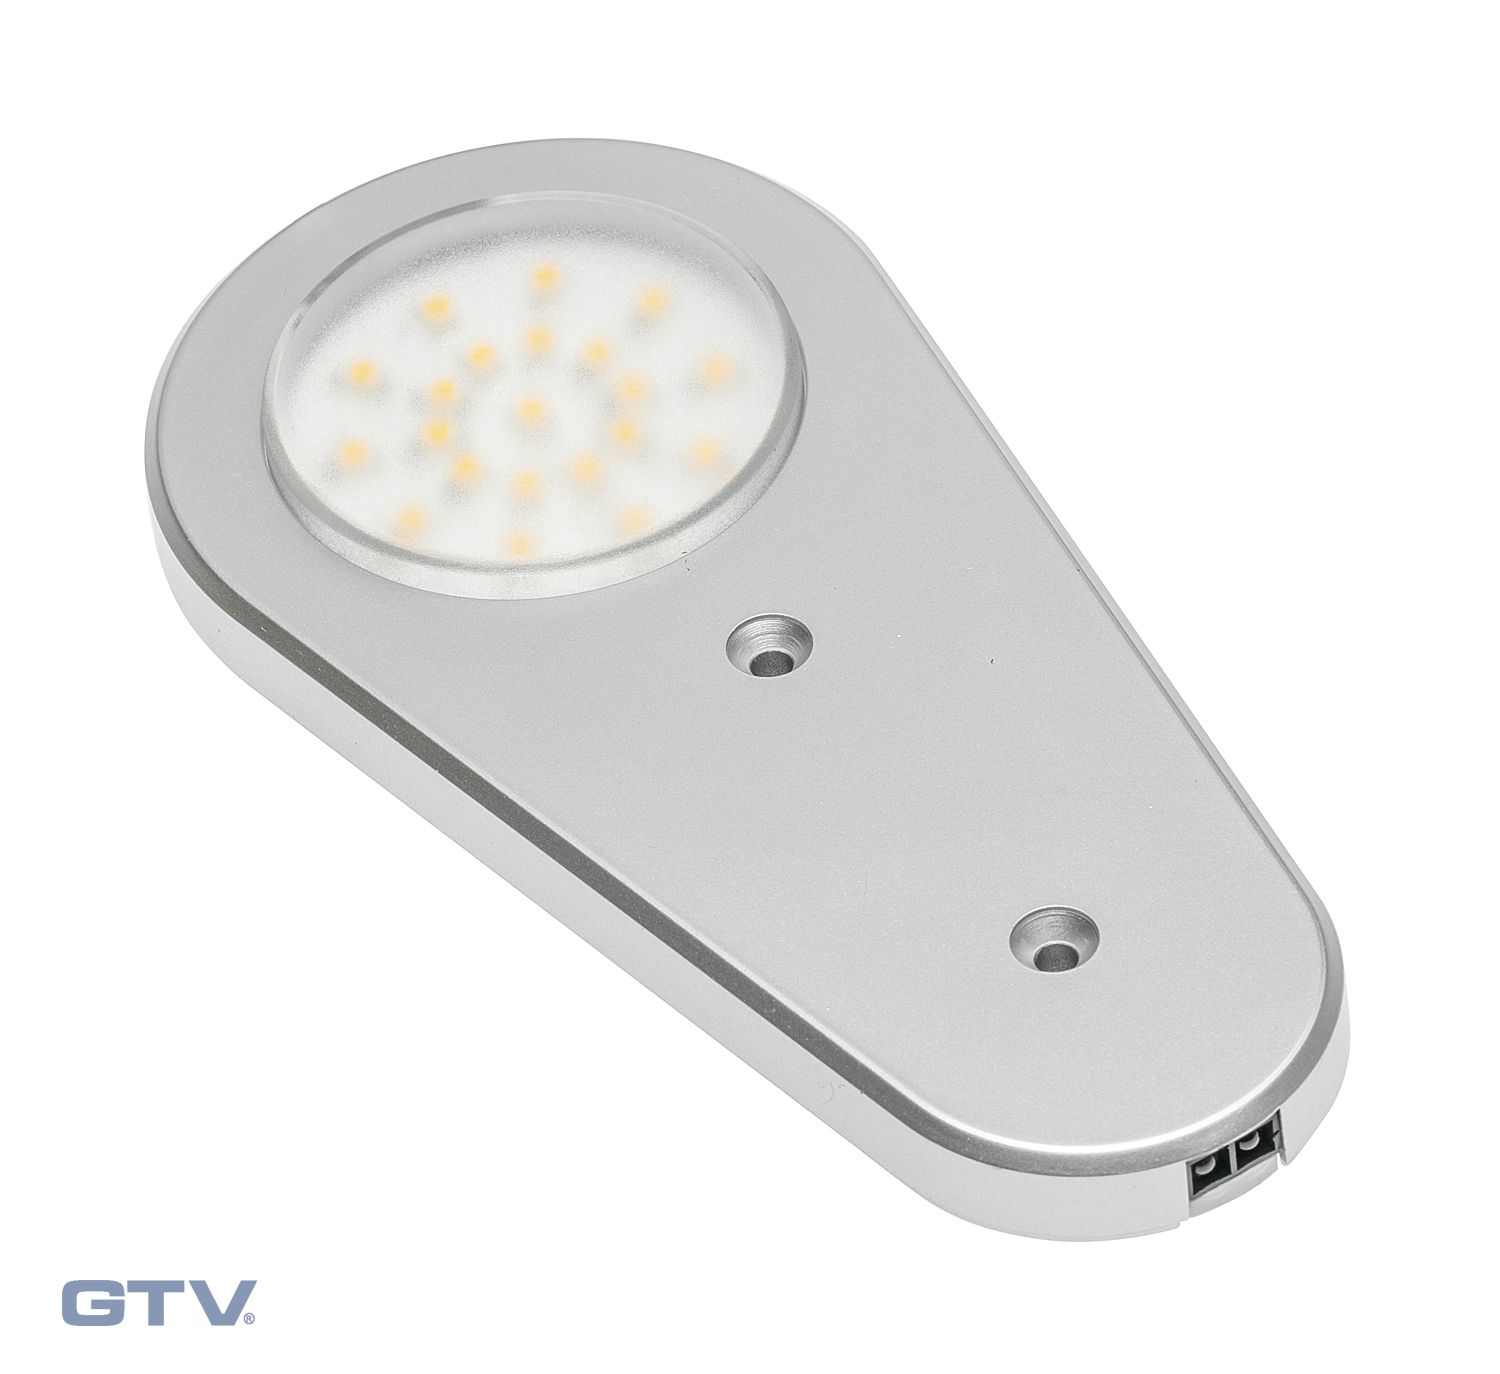 Точечный накладной светодиодный светильник Soria статический датчик 12V, 21д, теп., ал. GTV, цвет теплый белый LD-SR16CB-53 10286 - фото 1